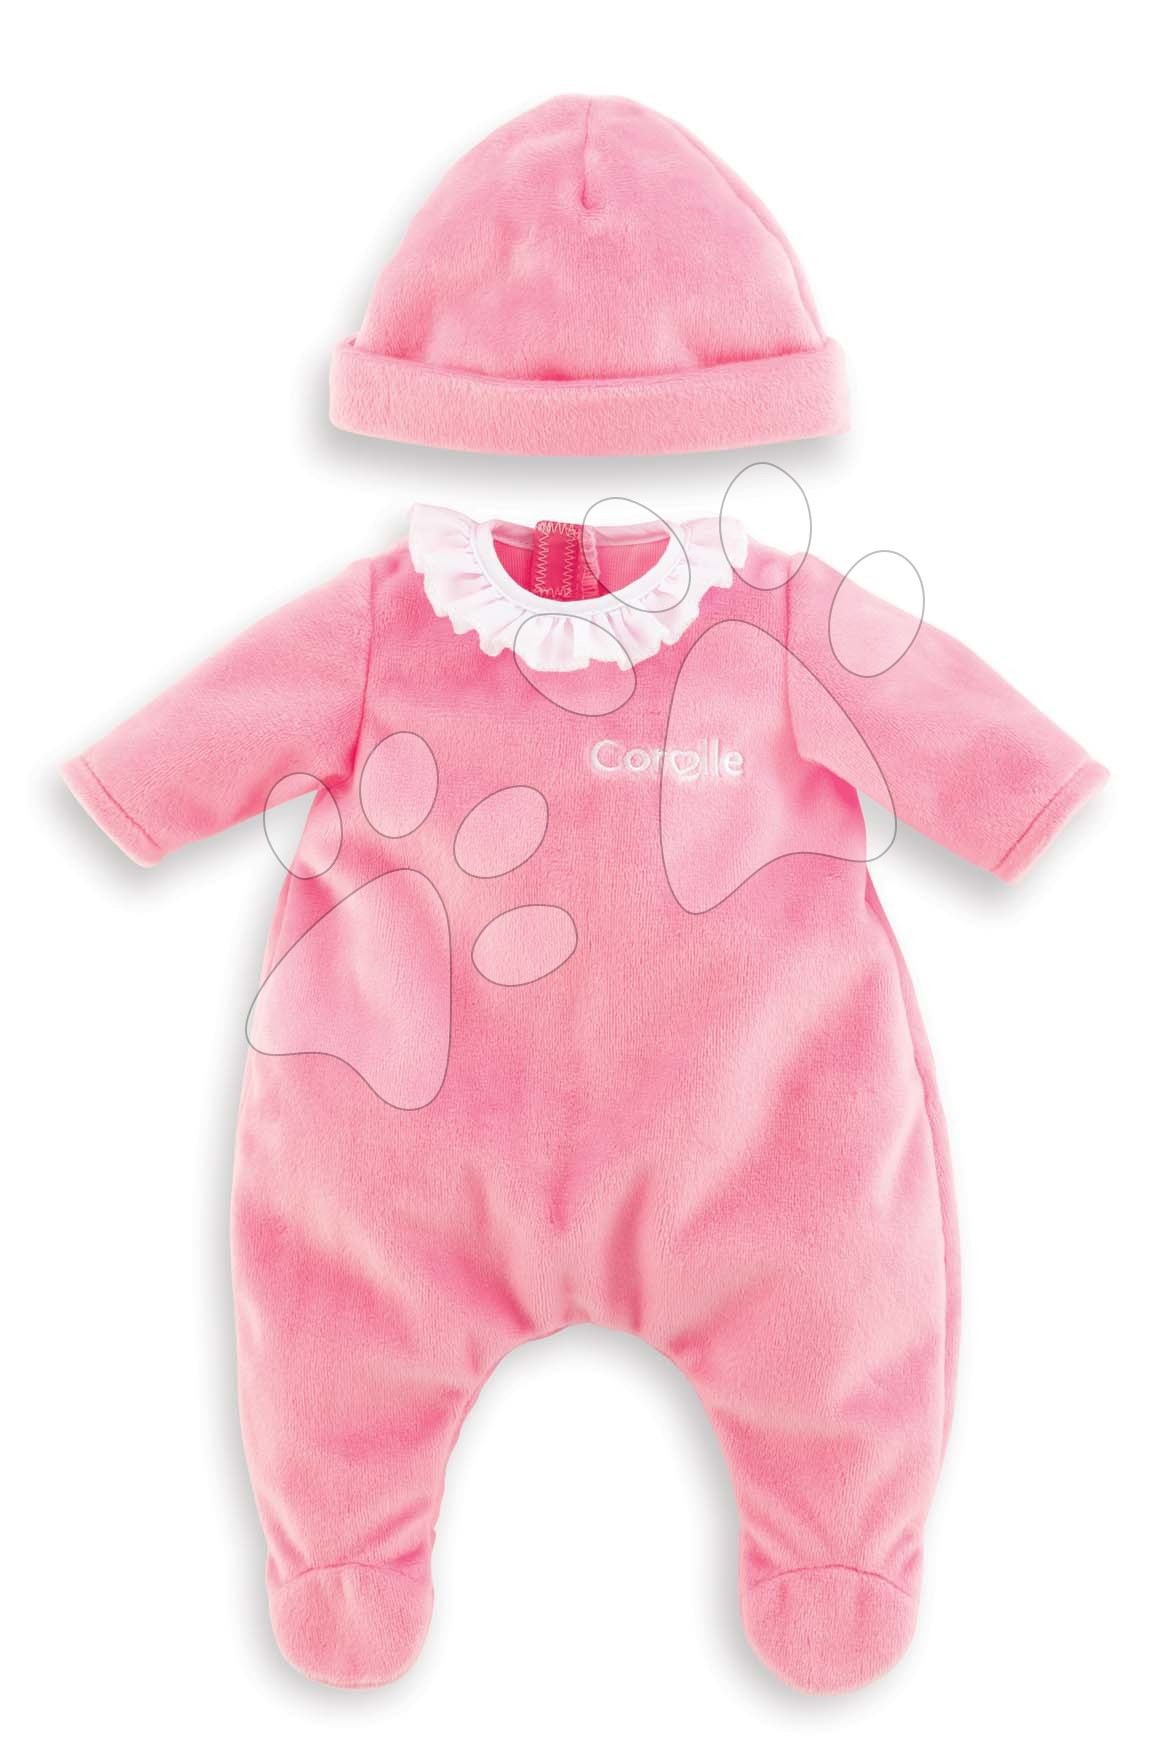 Oblečení Pajamas Pink & Hat Mon Premier Poupon Corolle pro 30 cm panenku od 18 měsíců